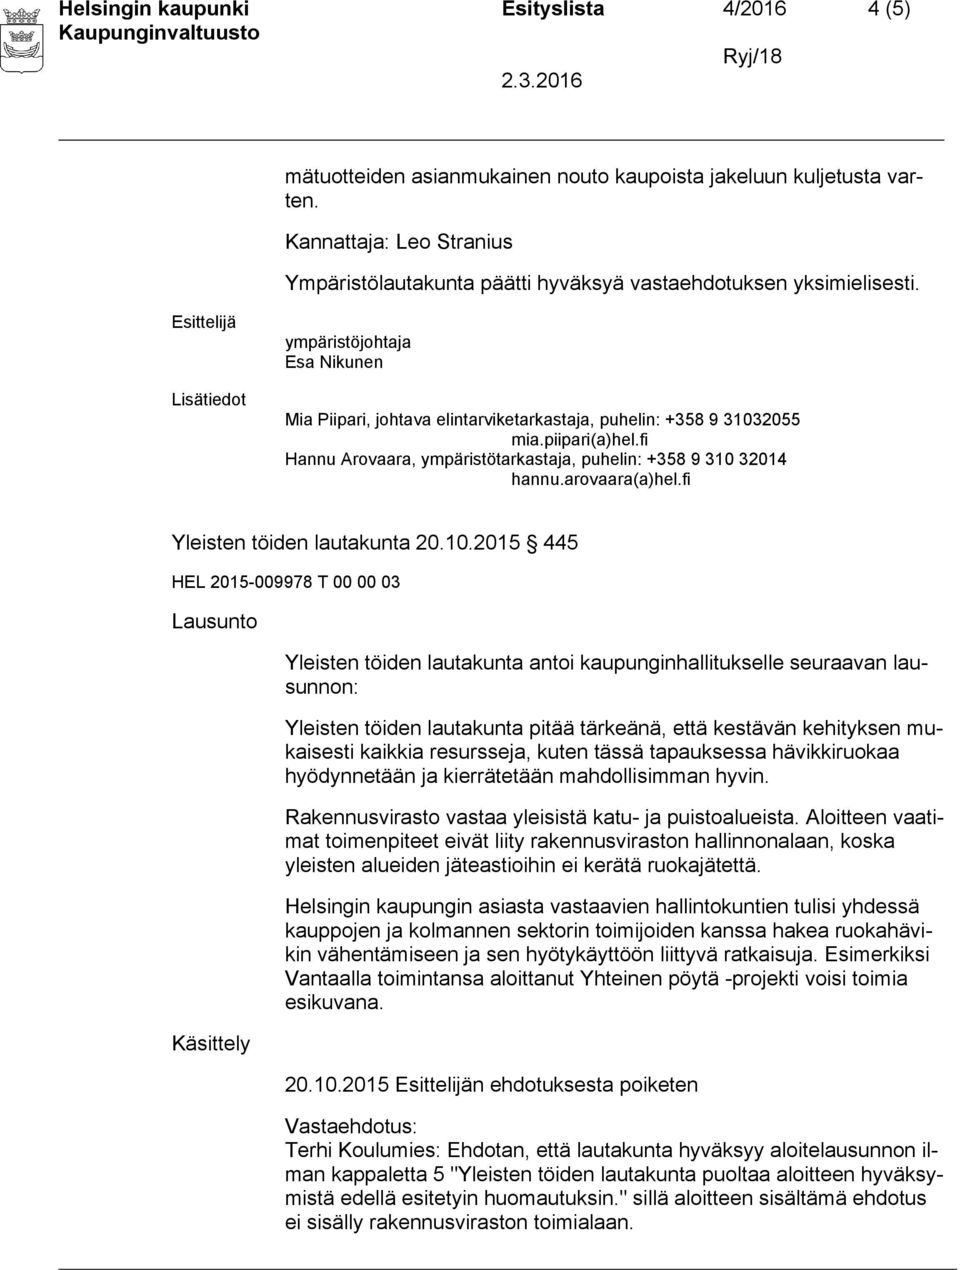 piipari(a)hel.fi Hannu Arovaara, ympäristötarkastaja, puhelin: +358 9 310 